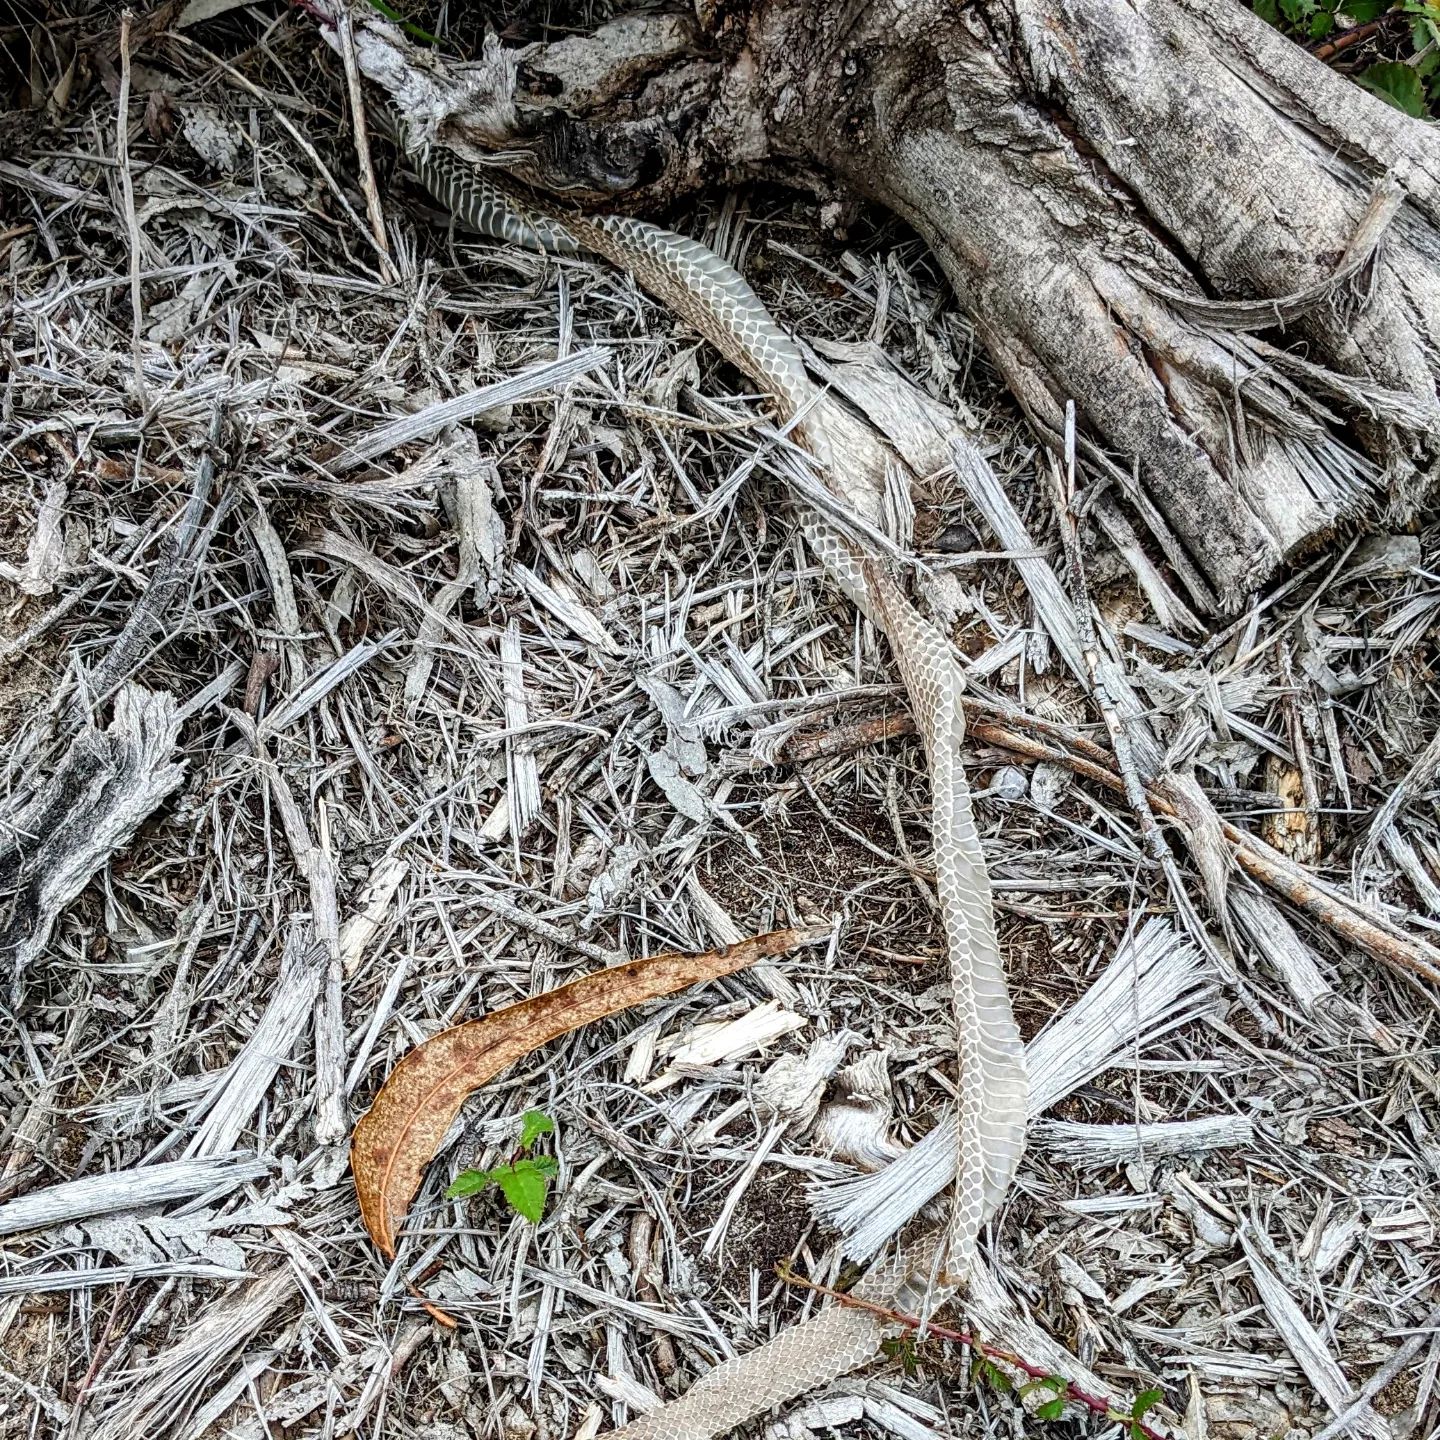 Found a #snakeskin in the garden 😮